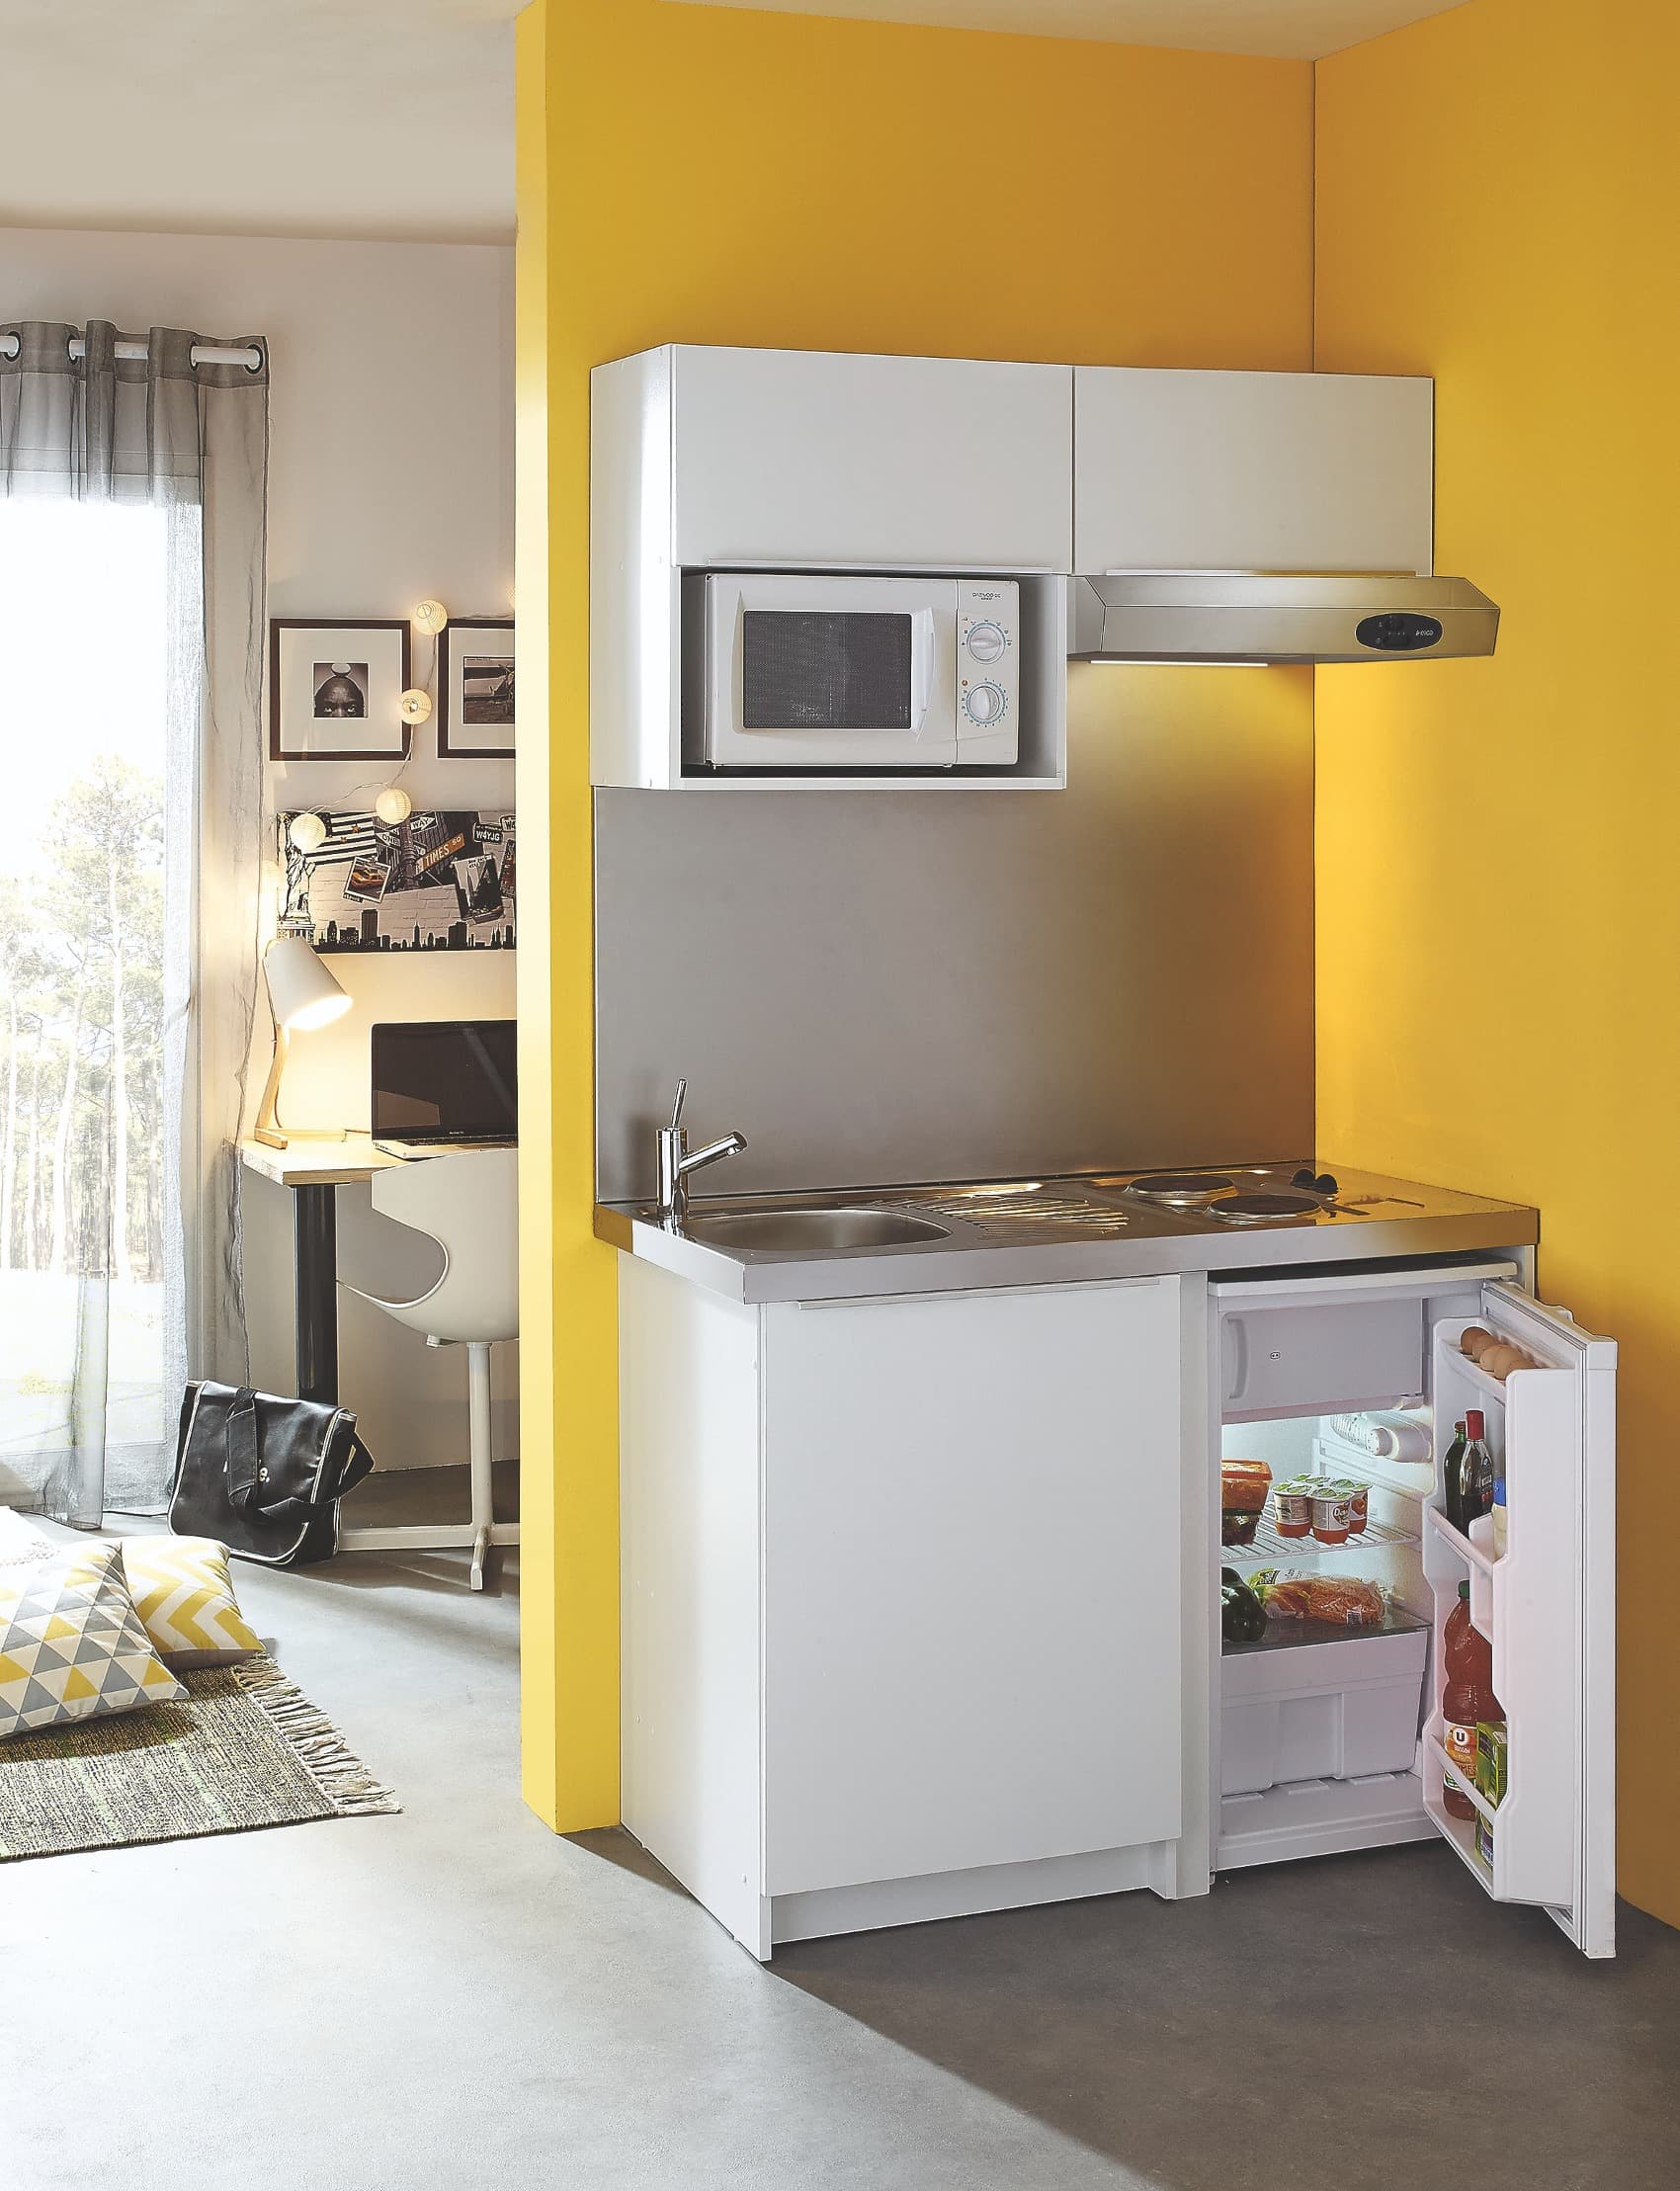 Cuisinette complète gamme CADETTE 120 cm comprenant : meuble référence ABCE120D02. évier cuisinette inox 18/10 lisse référence CPAE120A00. réfrigérateur référence MRT2048Z00